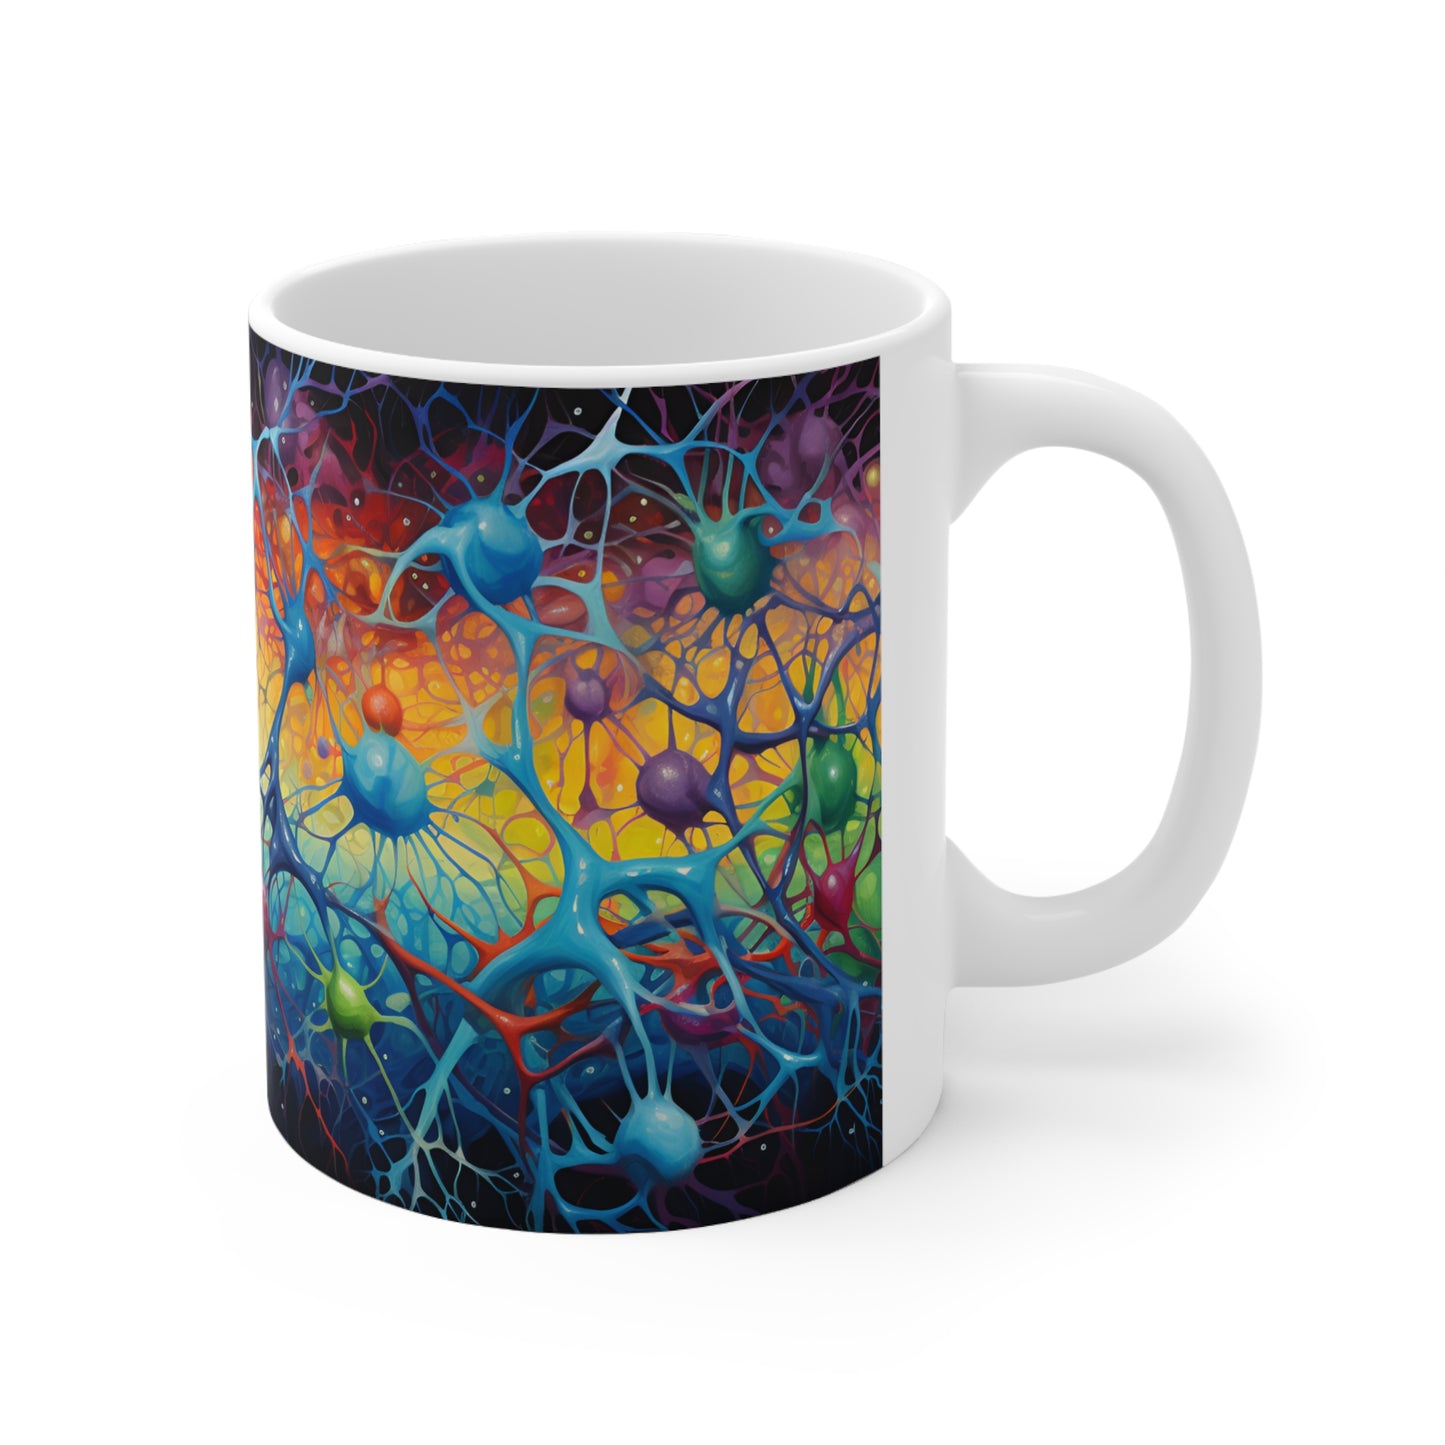 Vibrant Neuron Mug - 11pz Ceramic Mug - Sea Siren Mug